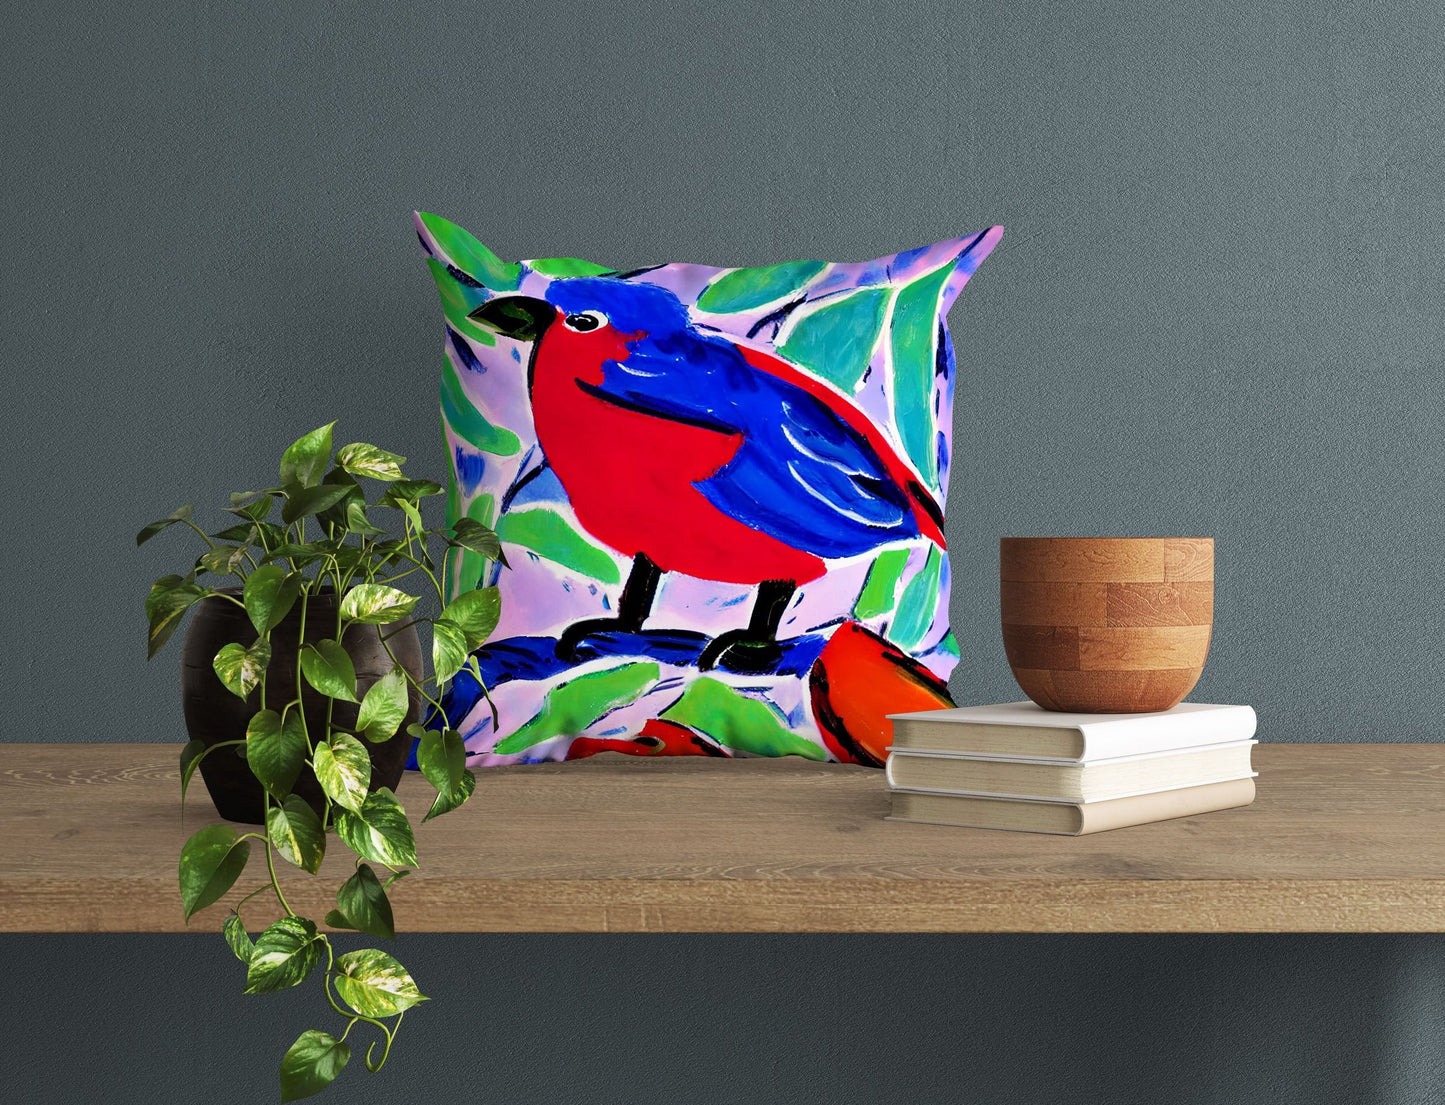 Red And Blue Bird Throw Pillow, Abstract Throw Pillow, Art Pillow, Colorful Pillow Case, Modern Pillow, 20X20 Pillow Cover, Housewarming